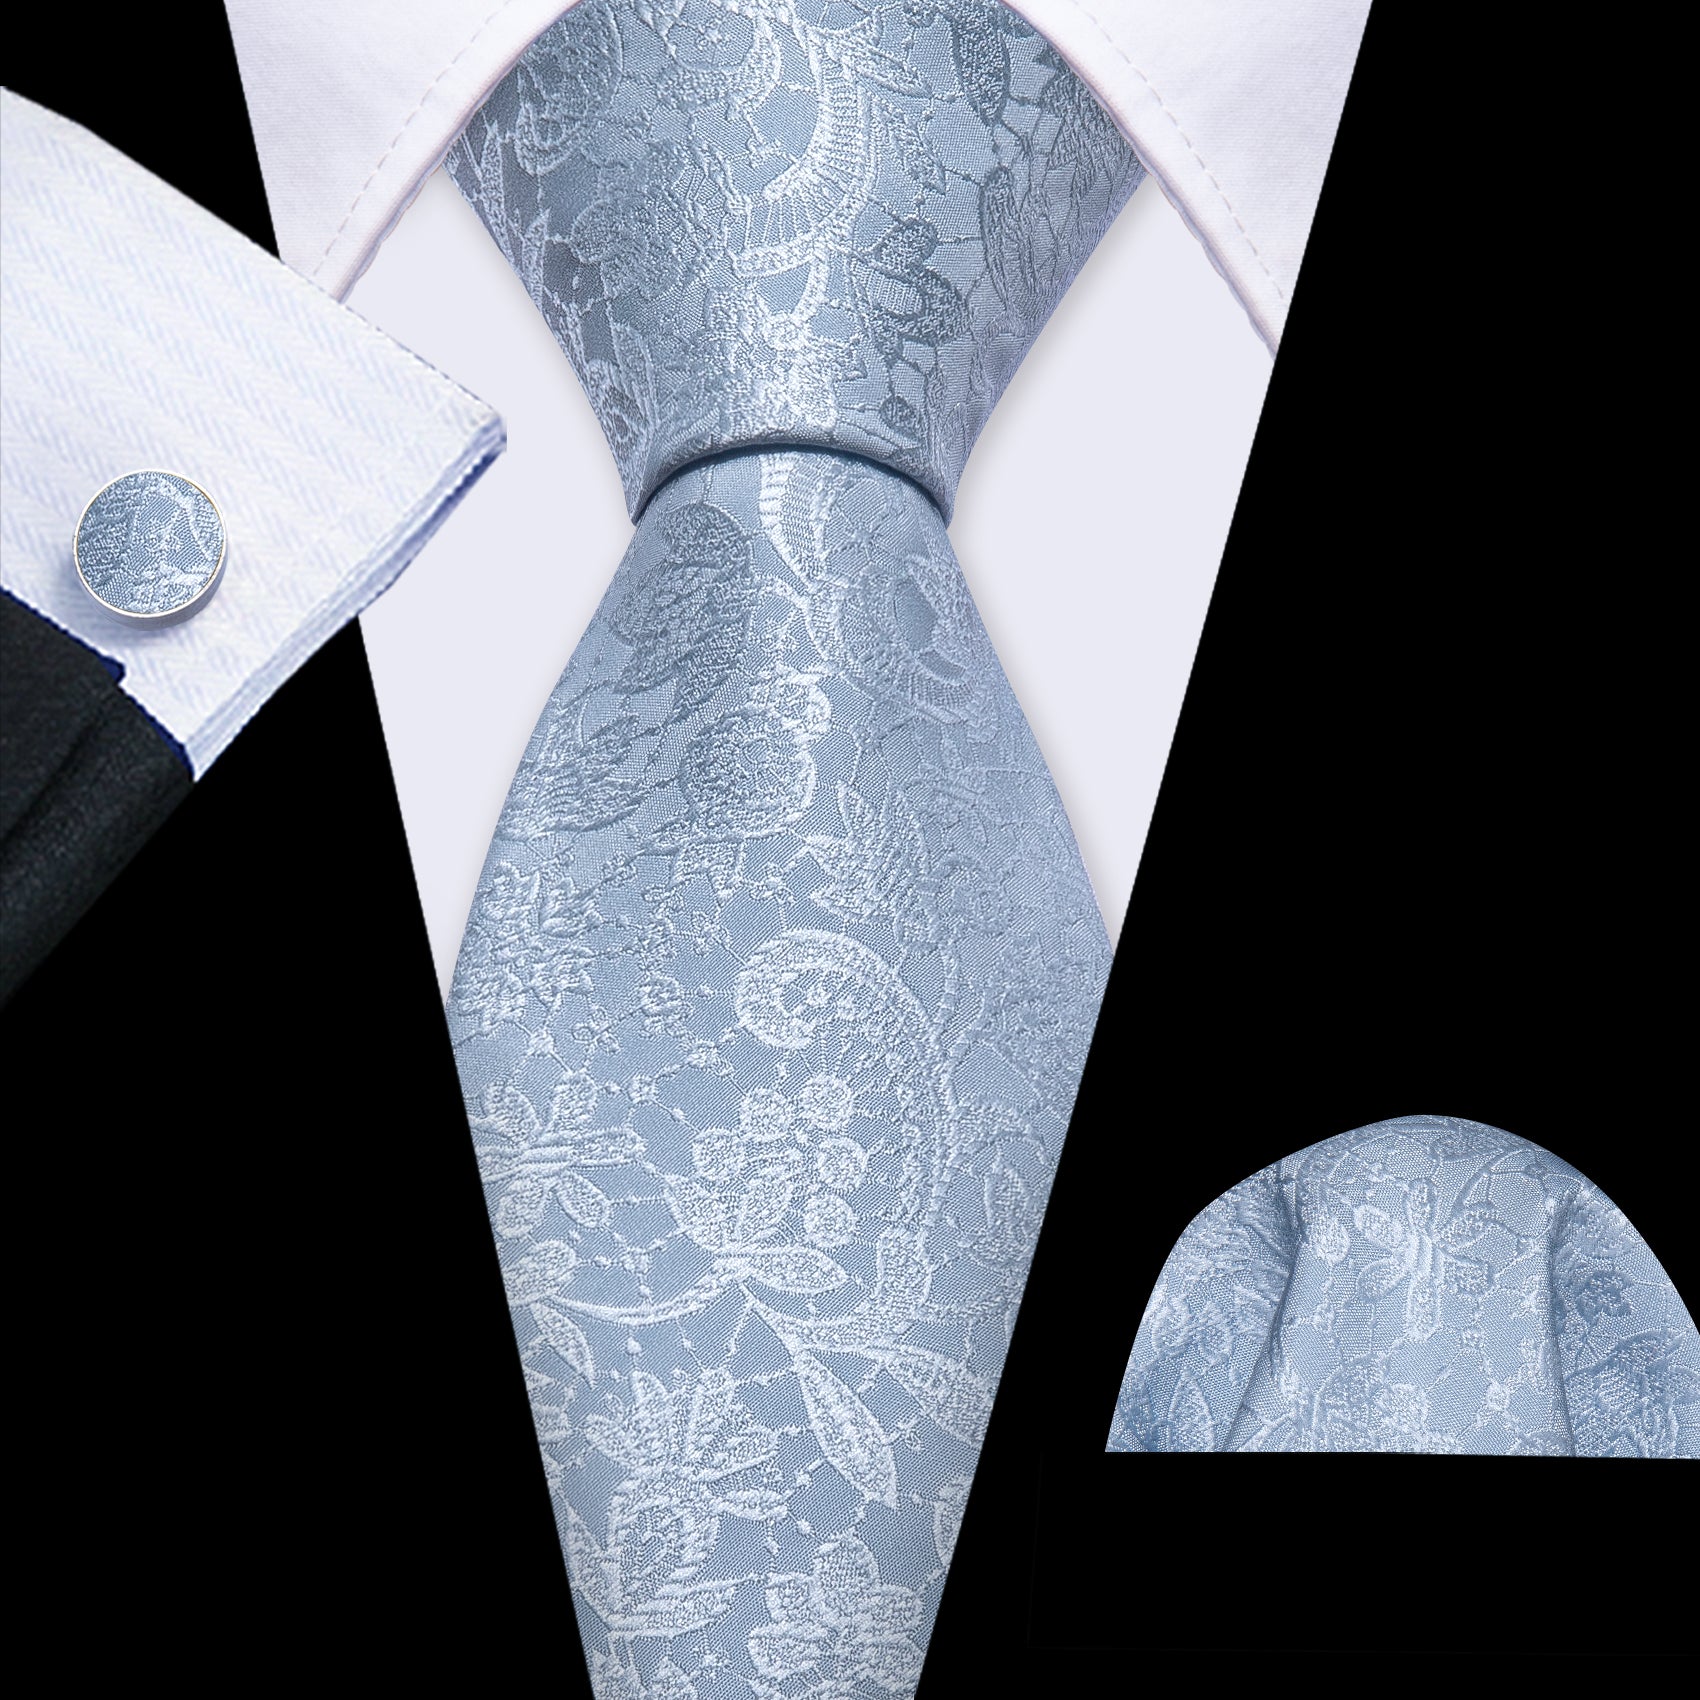 Mist Blue Paisley Silk Tie Pocket Square Cufflinks Set